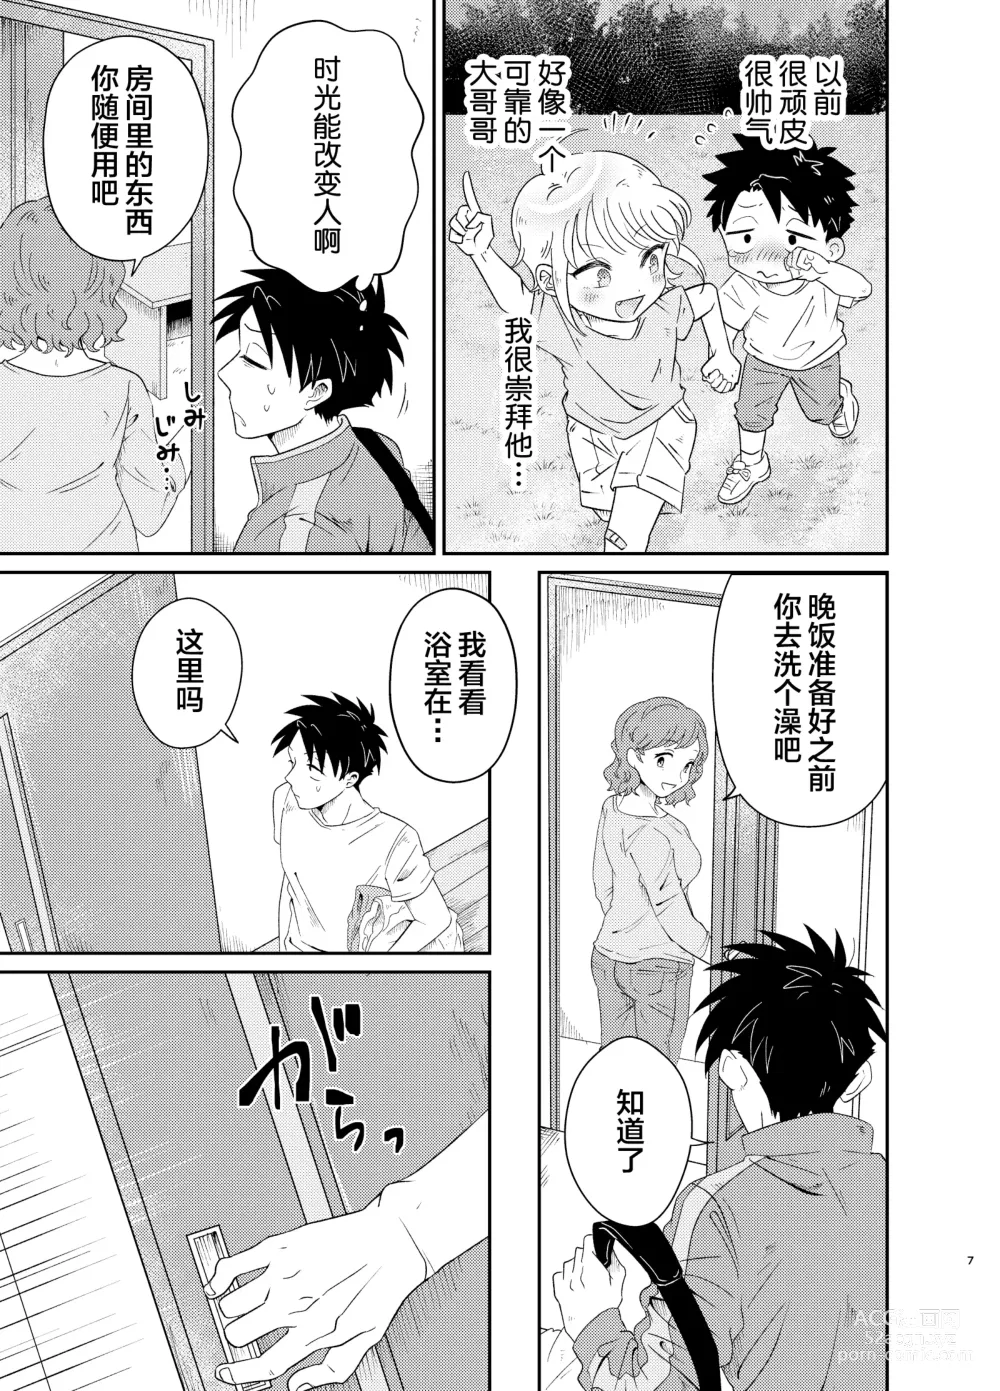 Page 7 of doujinshi Mechakucha Kawaikute Ecchi na Itoko wa Suki desu ka?